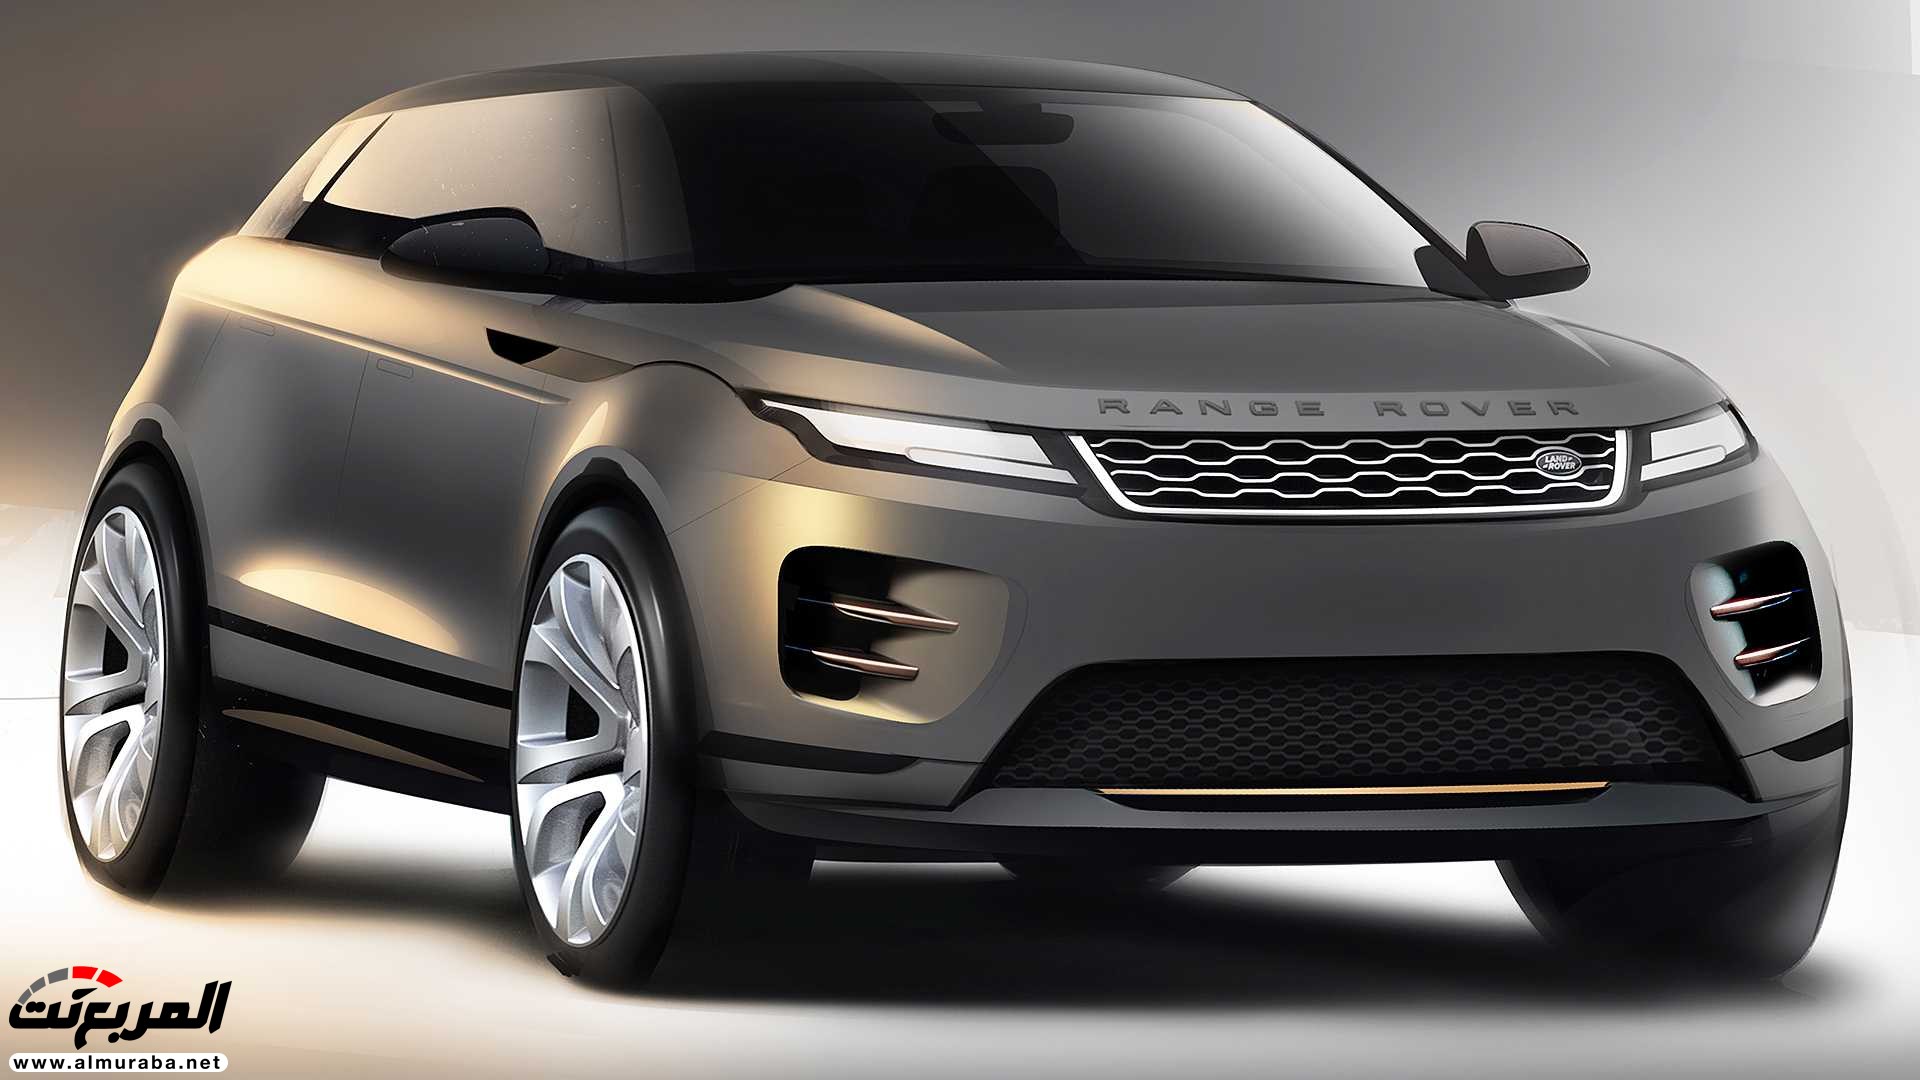 اهم 7 معلومات عن رنج روفر ايفوك 2020 الجديدة كلياً Range Rover Evoque 350